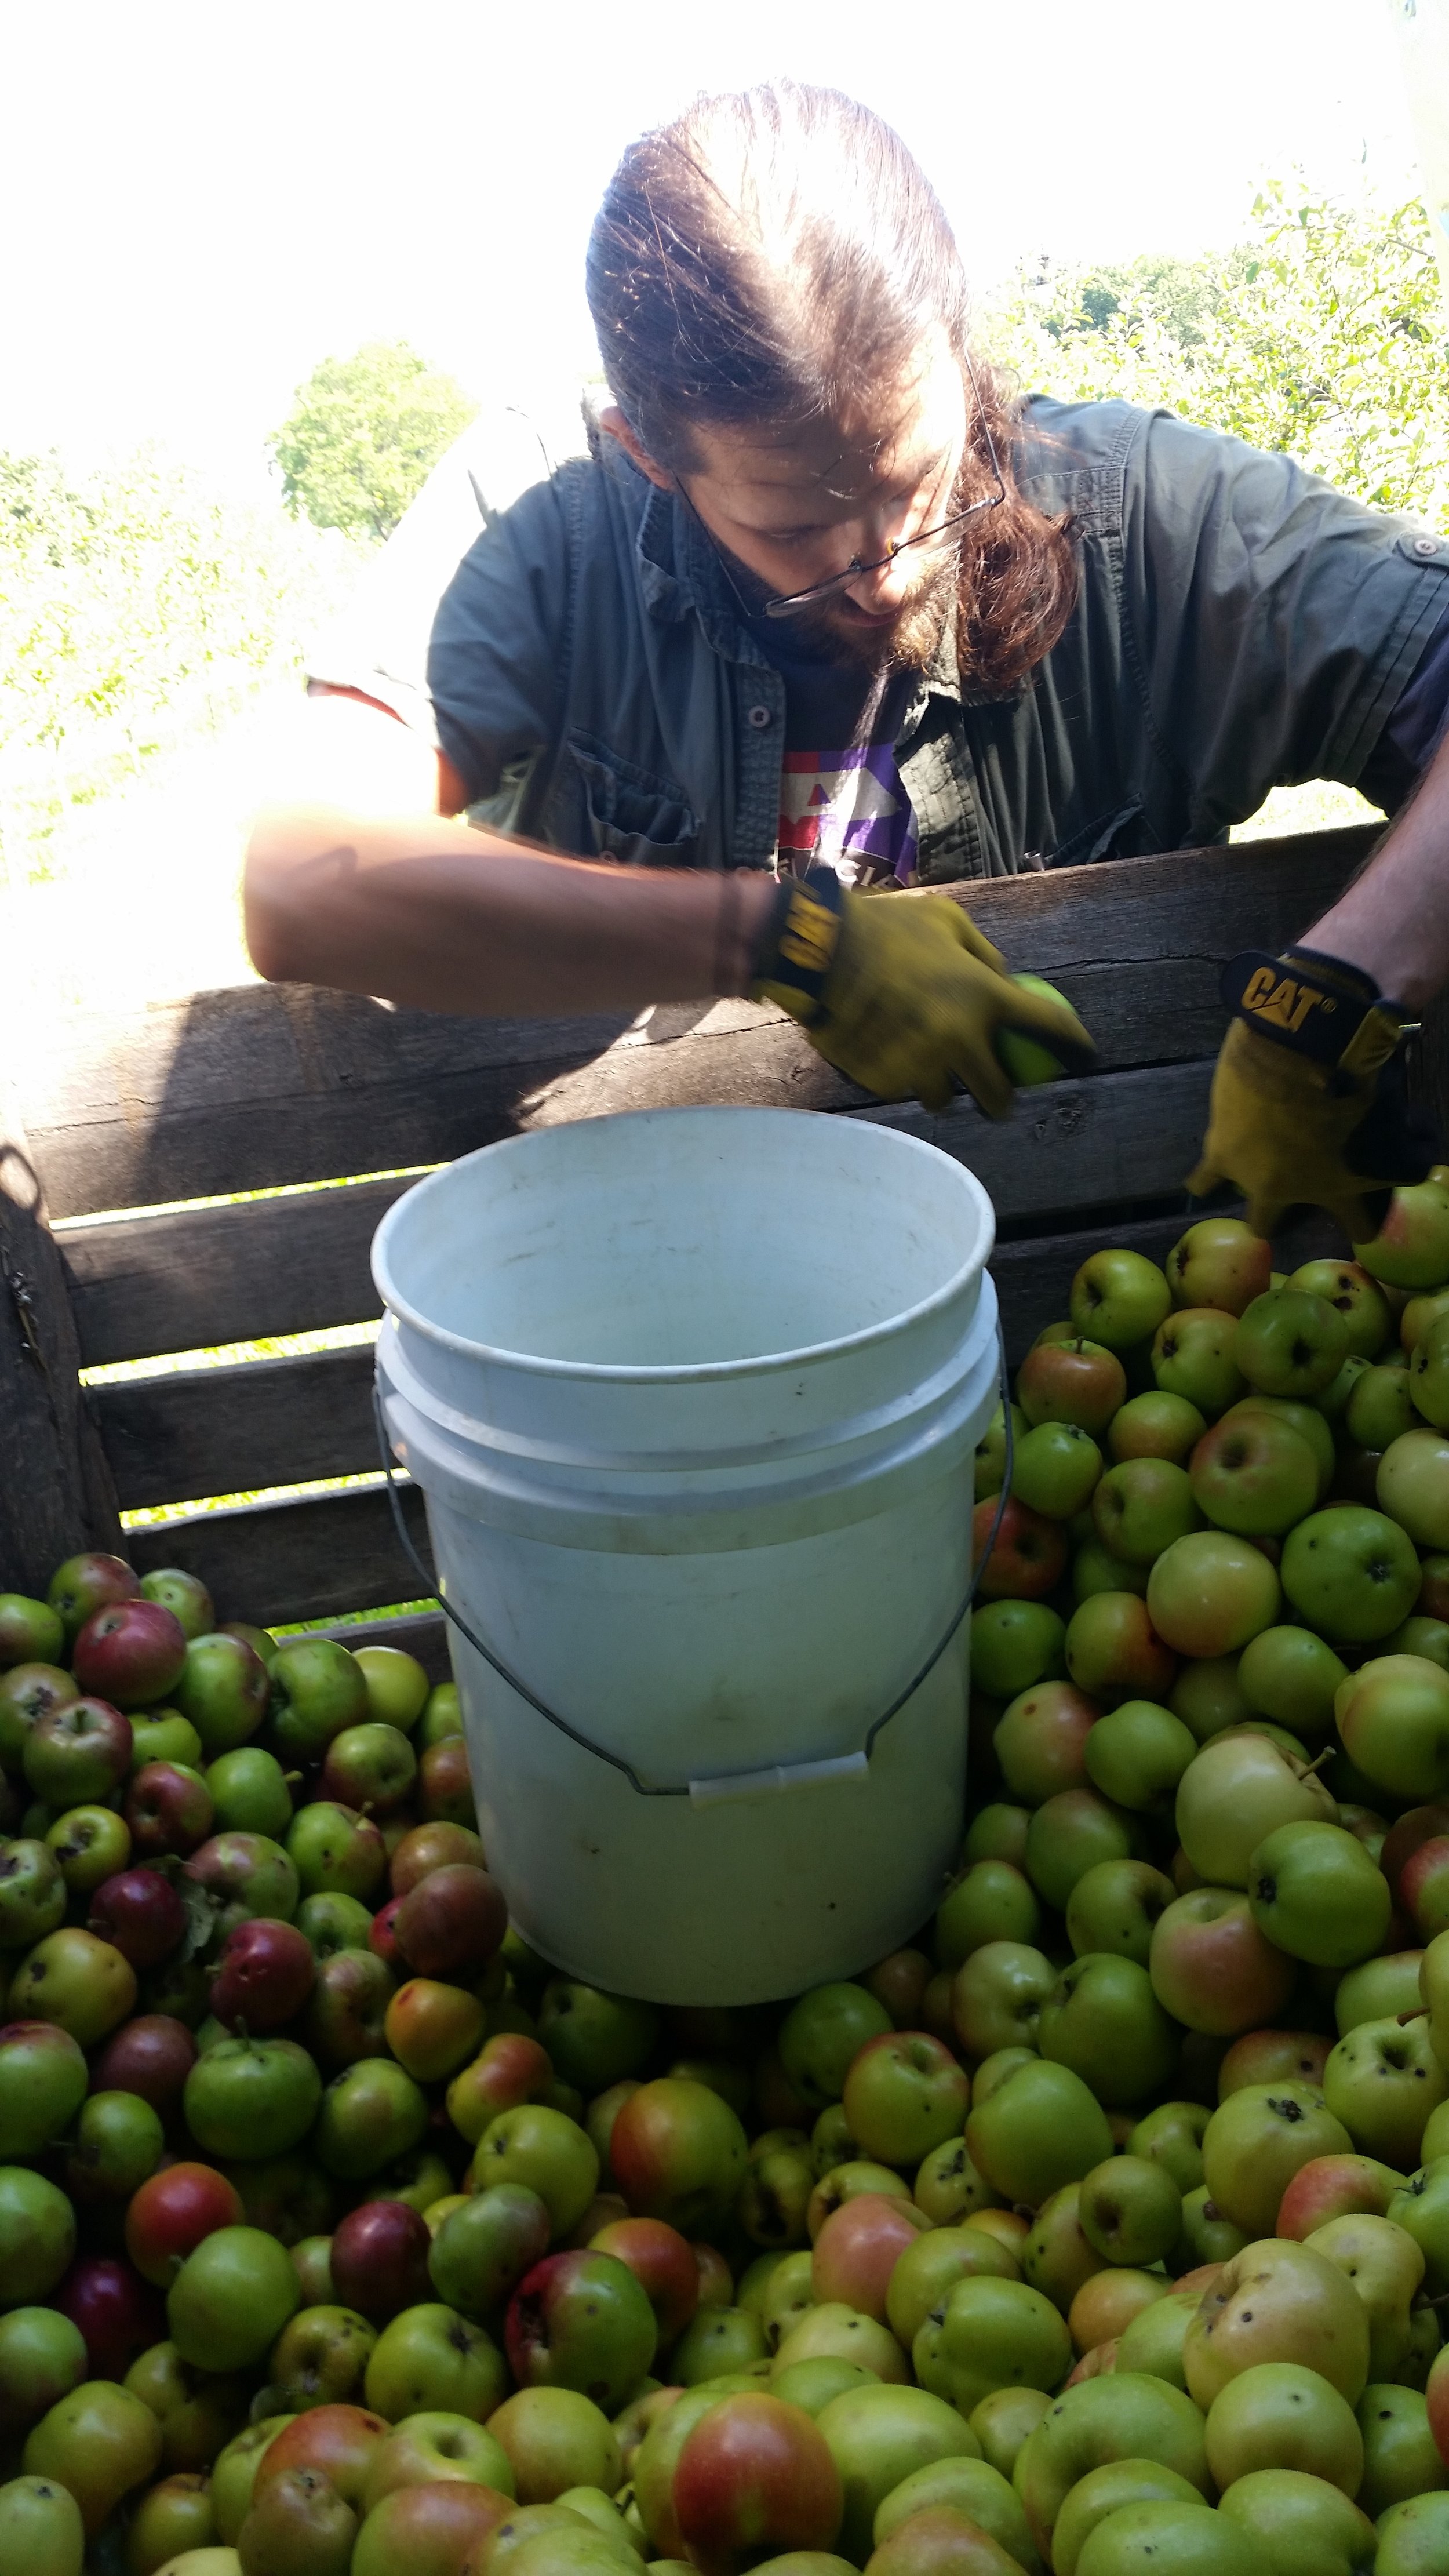  Farmer Adam sorting the apples! 